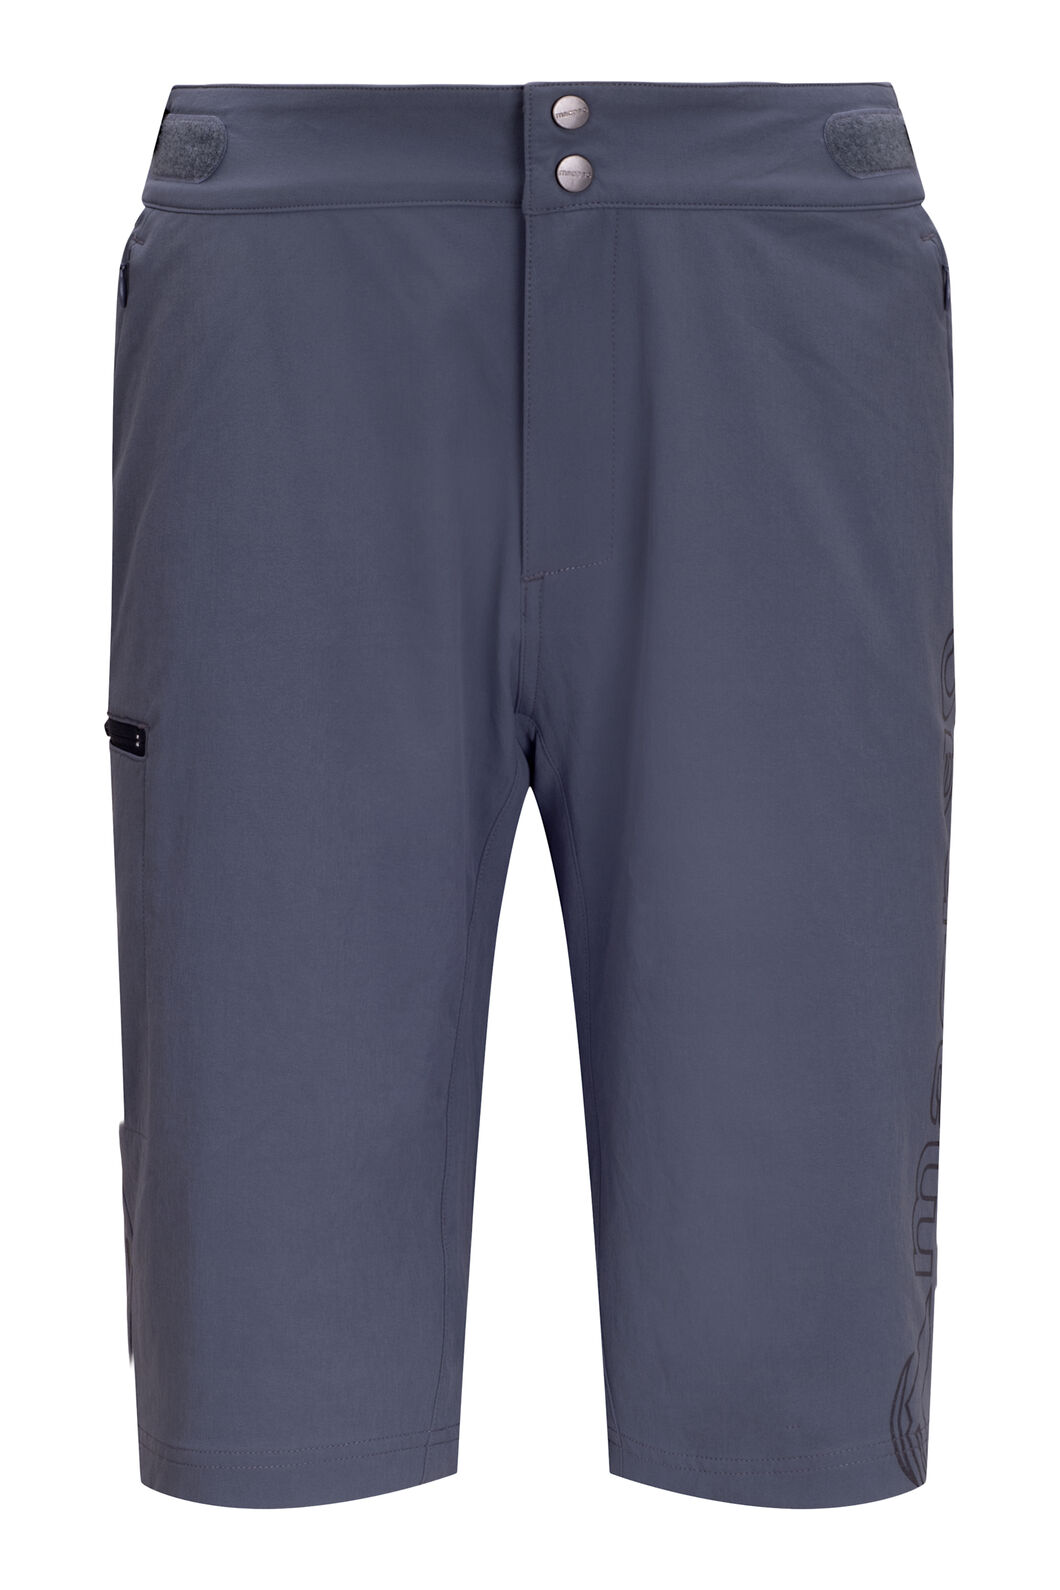 Macpac Men's MTB Shorts | Macpac